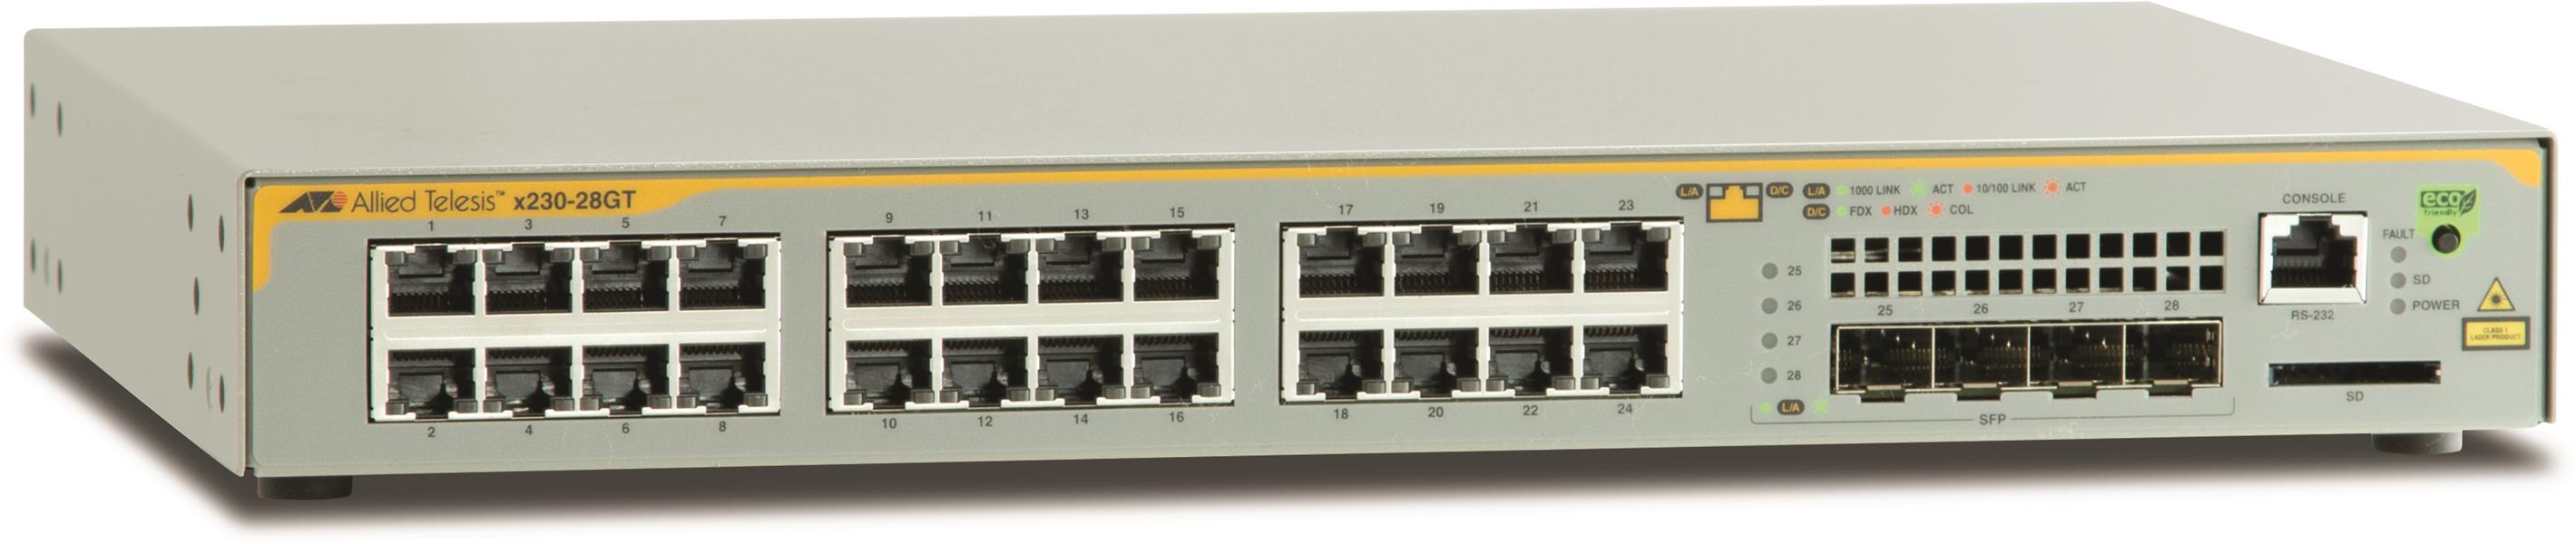 Allied Telesis AT-x230-28GT-50 Managed L3 Gigabit Ethernet (10/100/1000) Grijs 1U